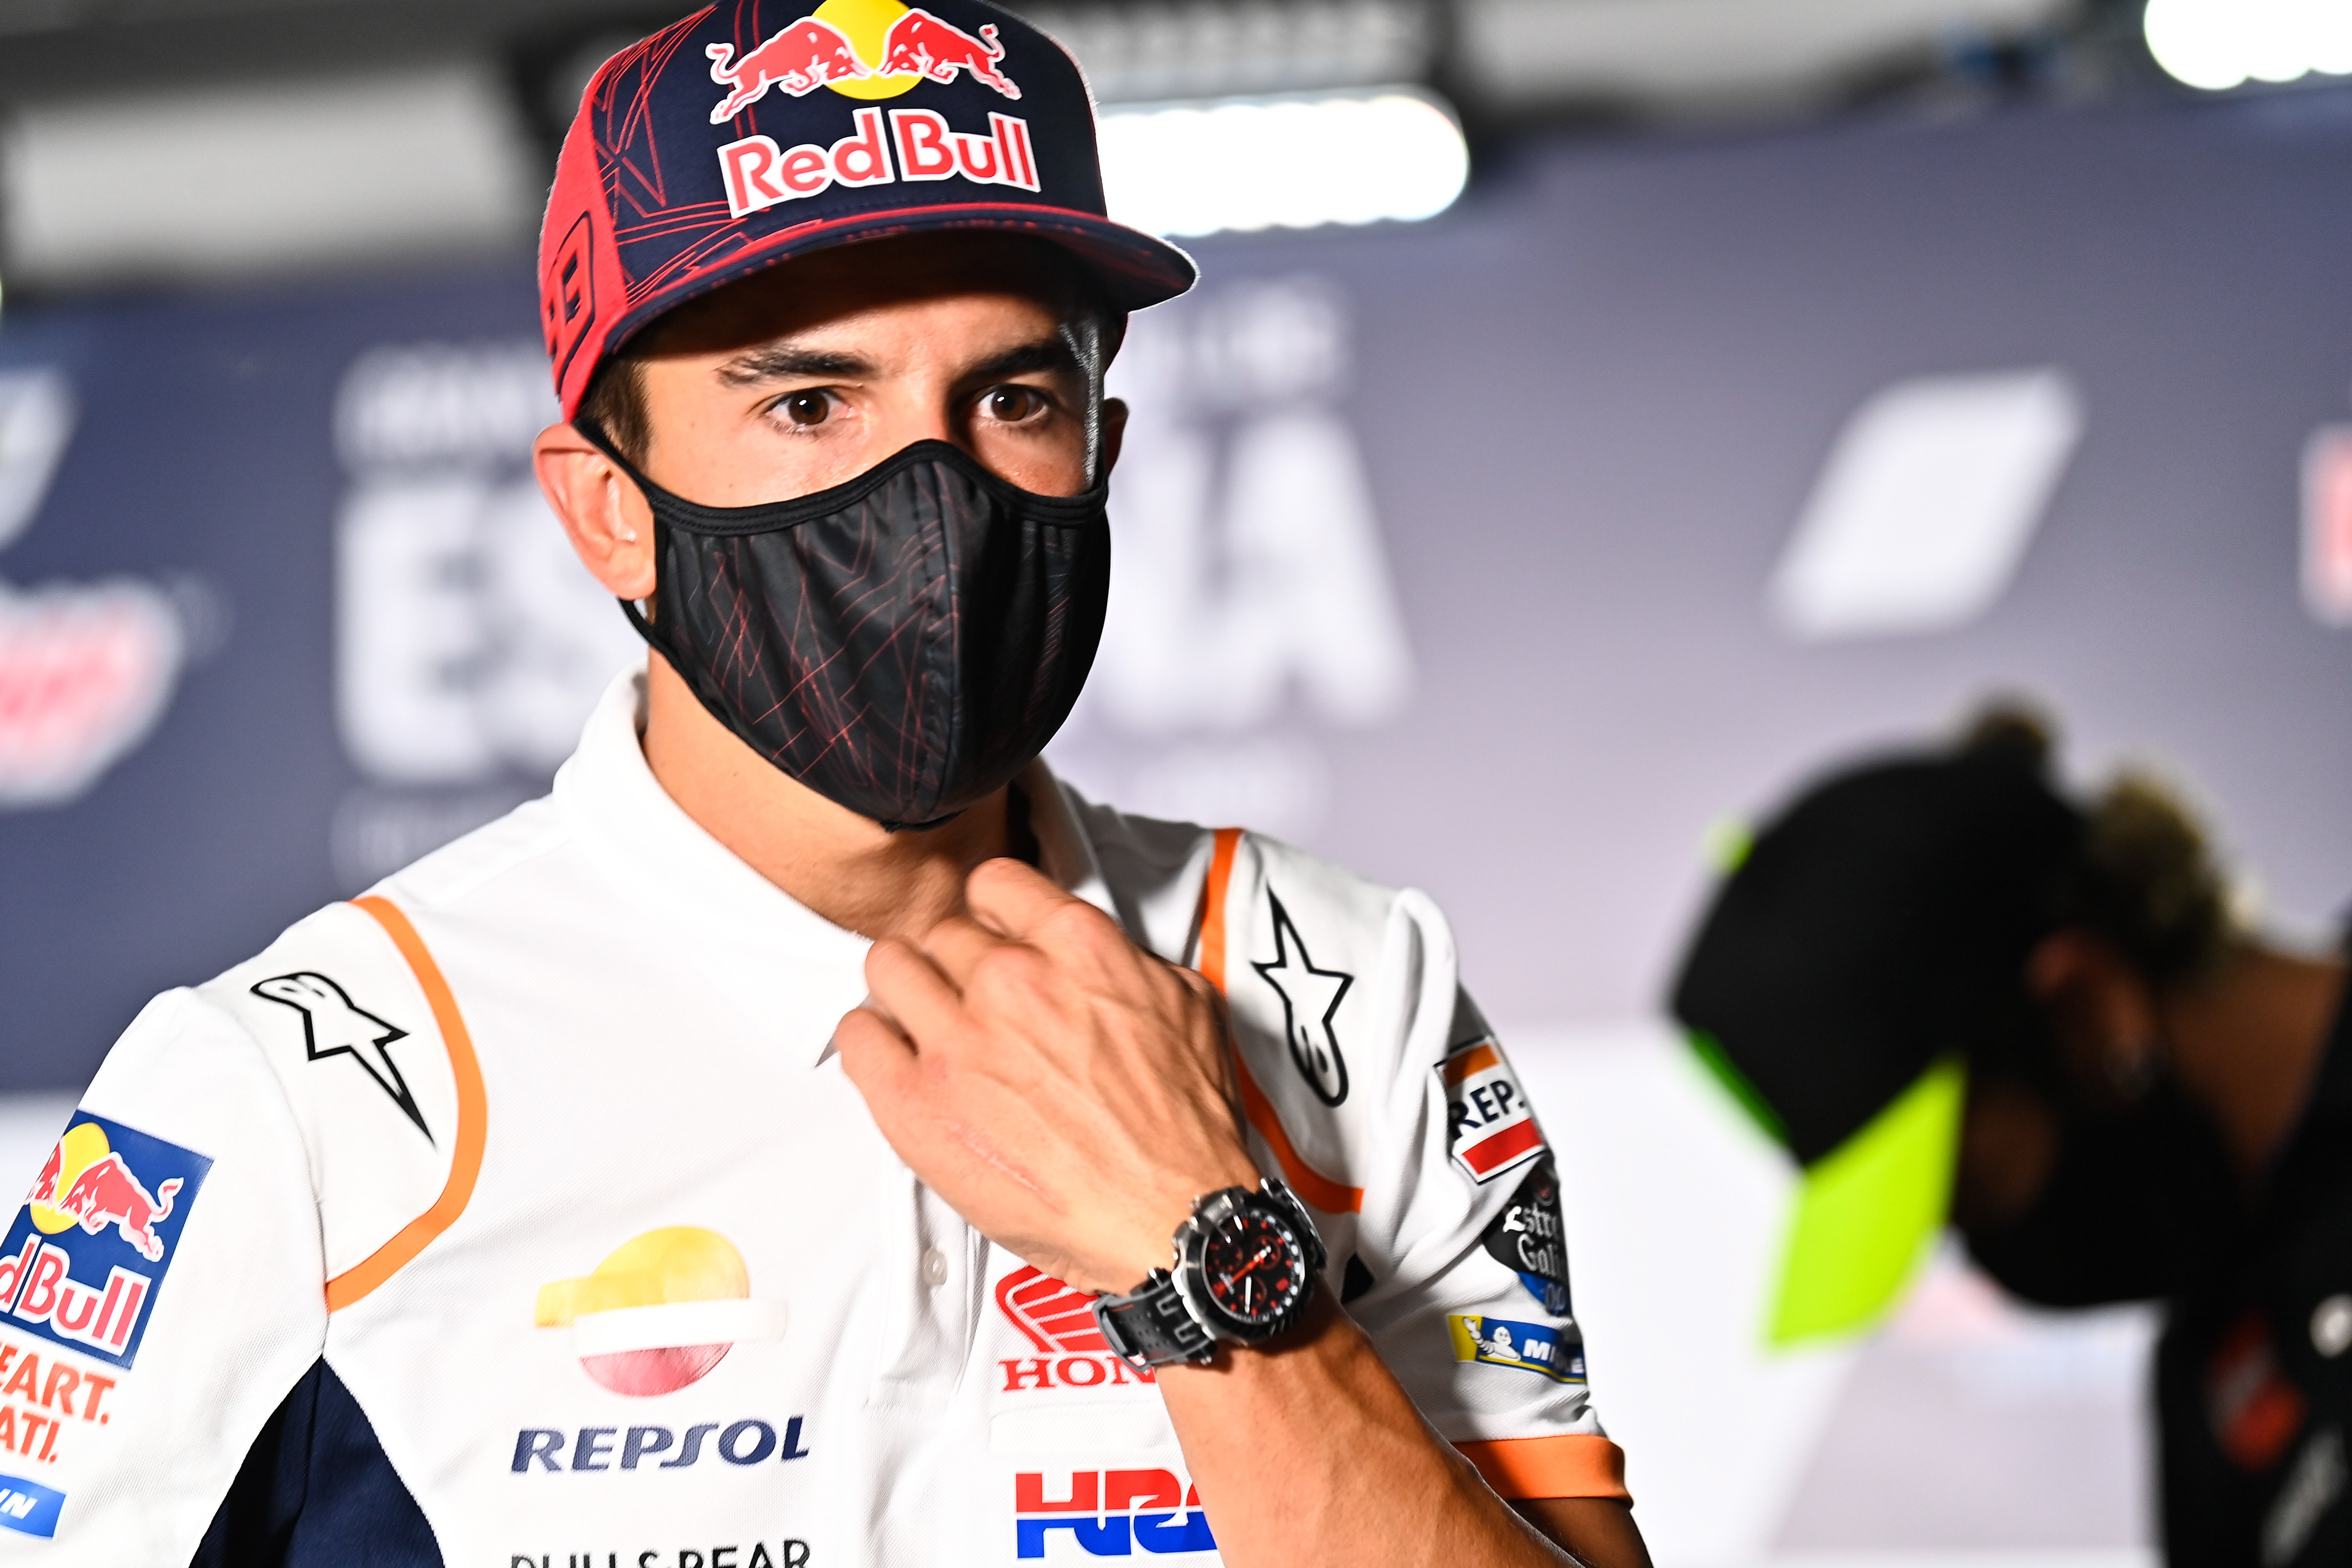 VÍDEO | Així ha arribat Marc Márquez al circuit de Jerez després de ser operat